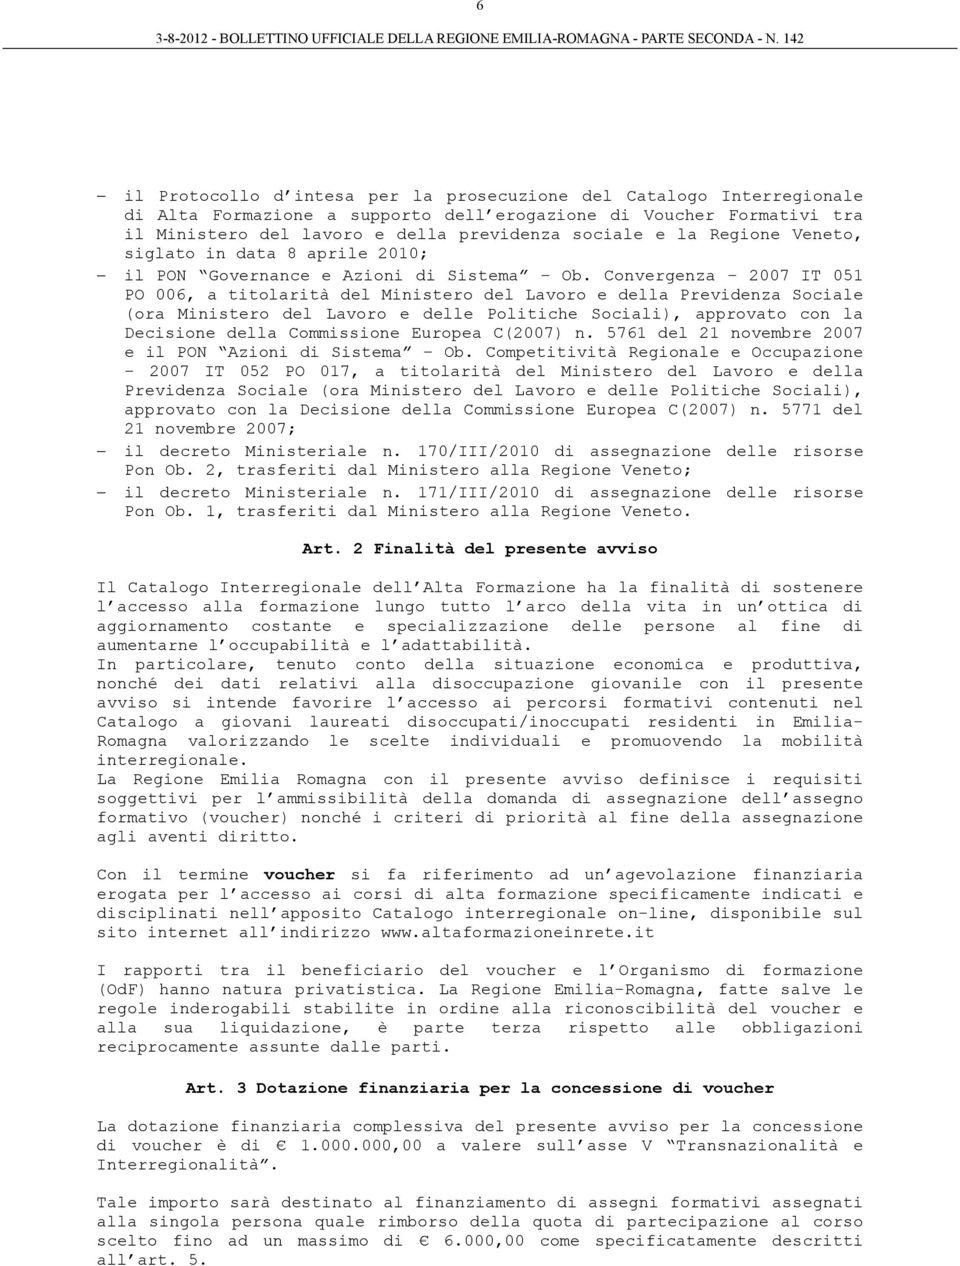 Convergenza 2007 IT 051 PO 006, a titolarità del Ministero del Lavoro e della Previdenza Sociale (ora Ministero del Lavoro e delle Politiche Sociali), approvato con la Decisione della Commissione